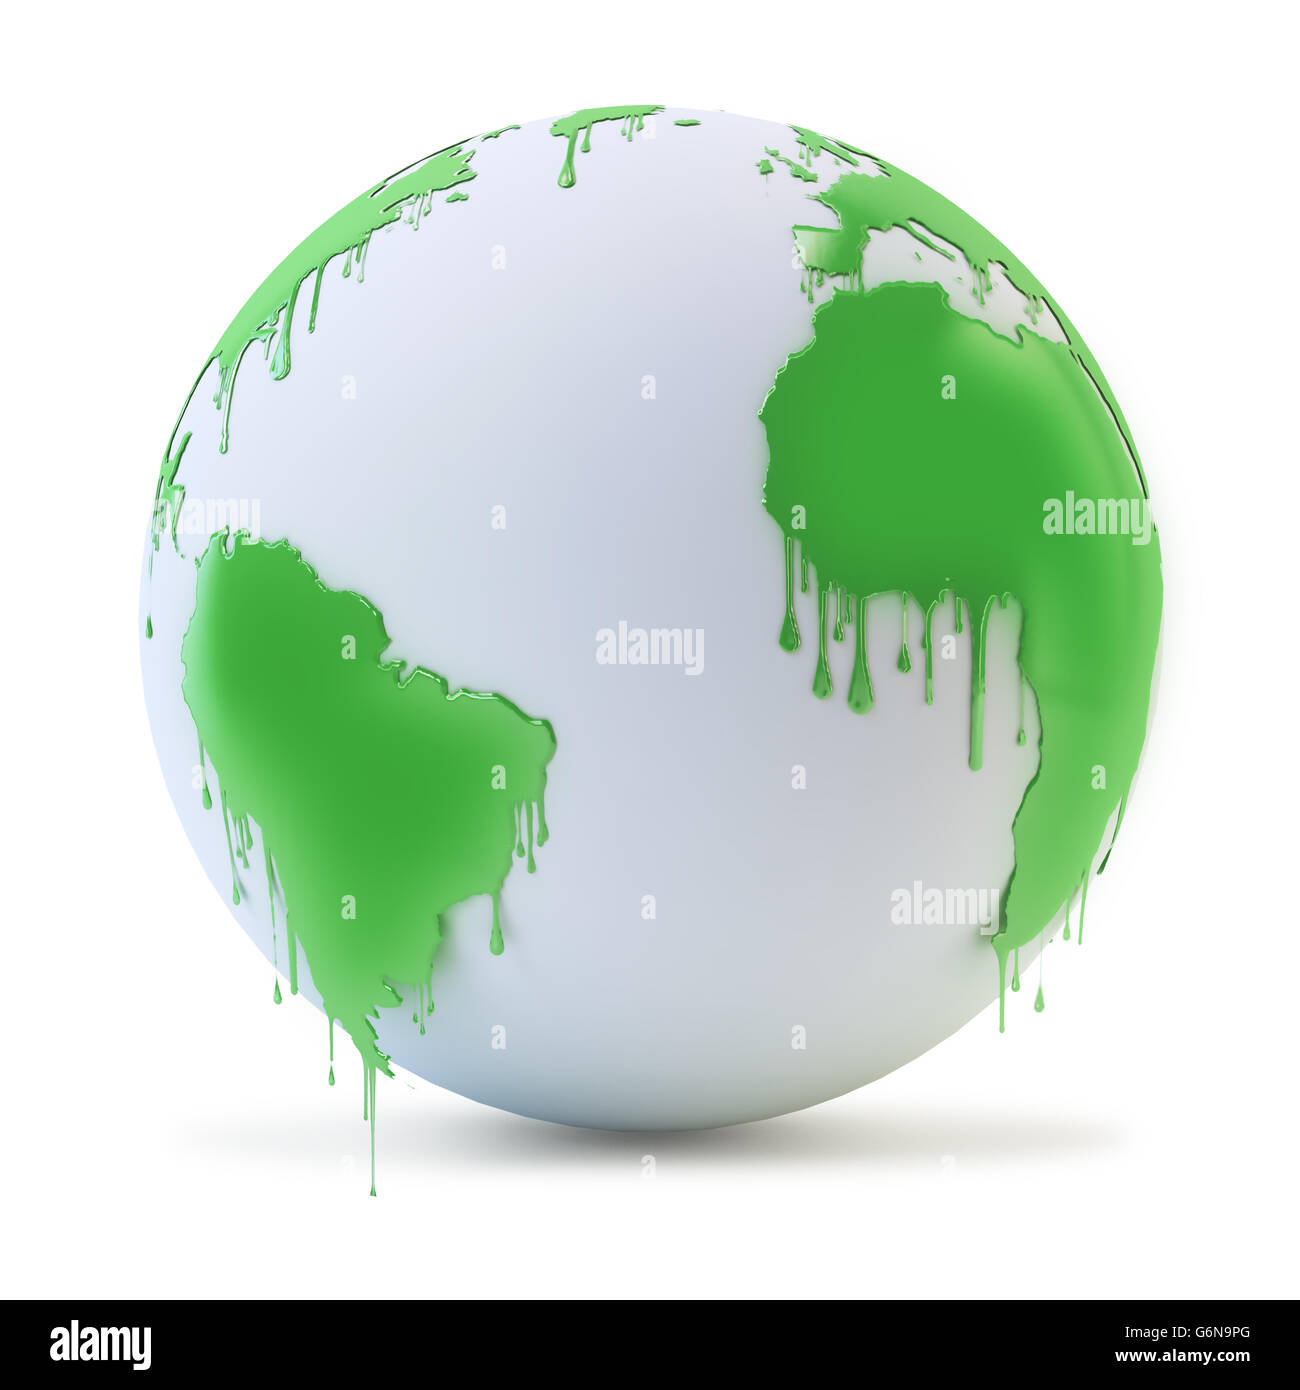 Nasse Farbe tropft aus einem Globus - Umweltschutz Konzept 3D illustration Stockfoto